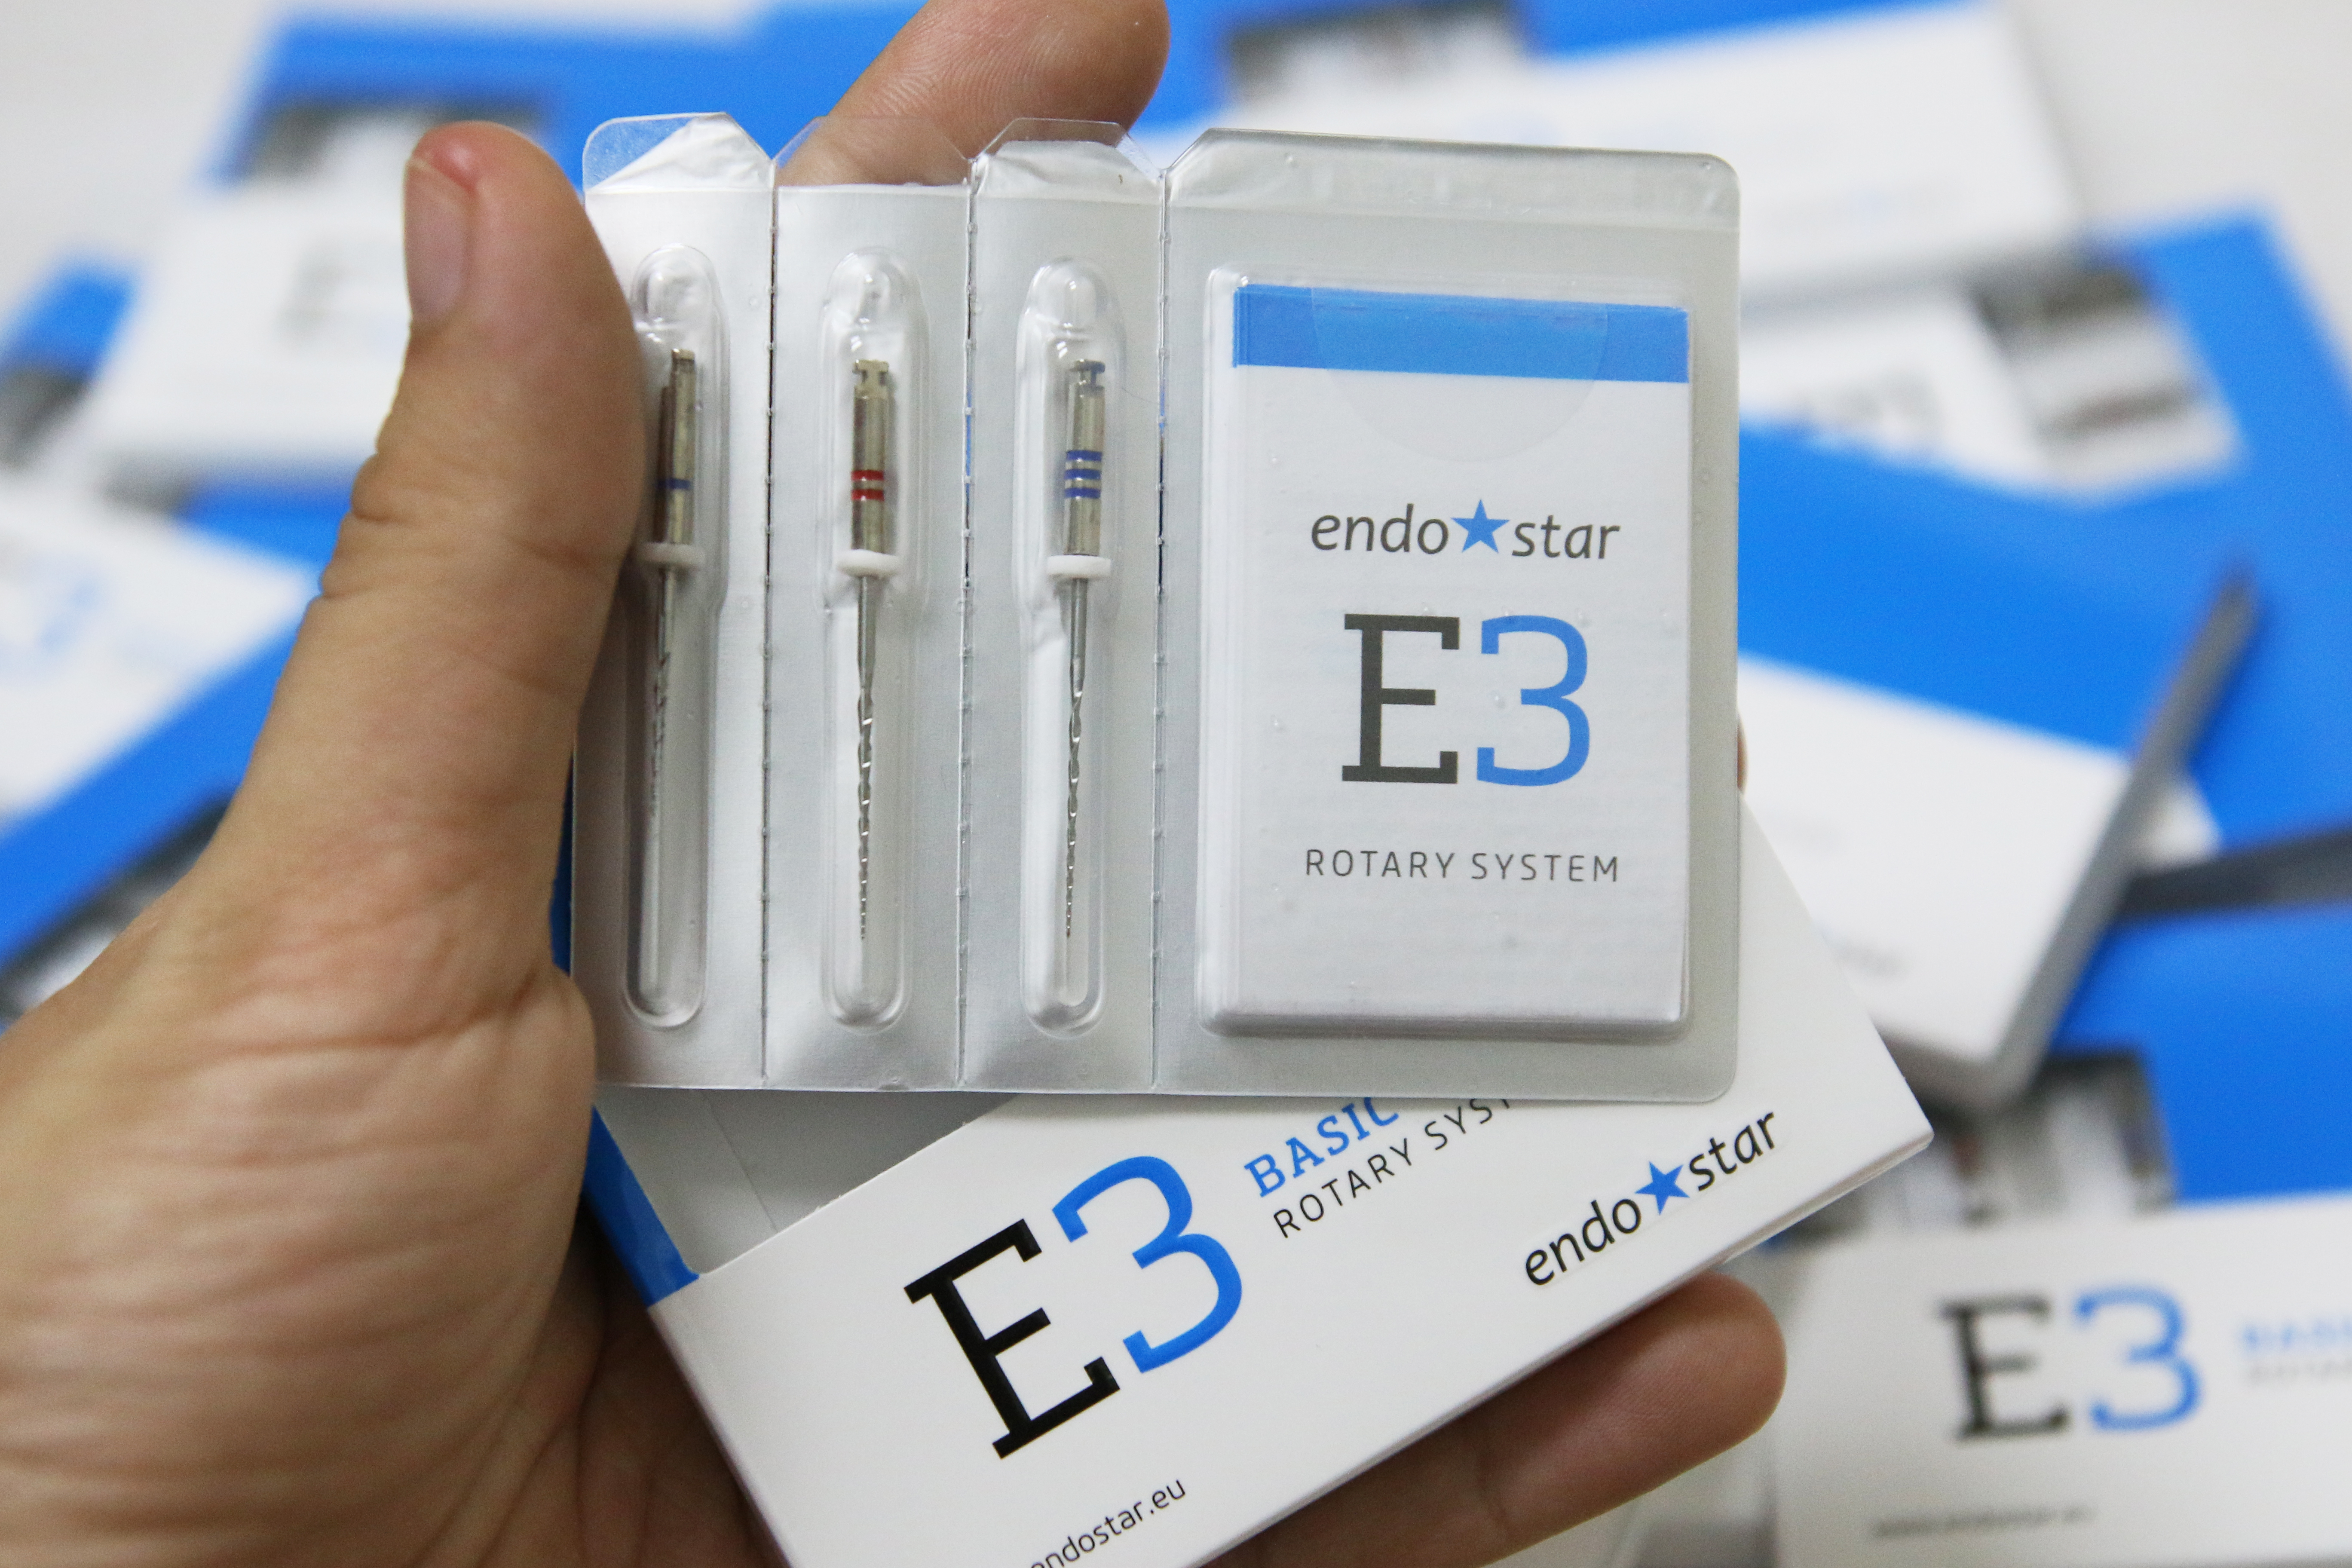 Trâm file nội nha từ châu Âu EndoStar E3- file đàn hồi - E3 Big-3 cây khác loại-35/04 (25mm), 40/04 (25mm), 45/04 (25mm)